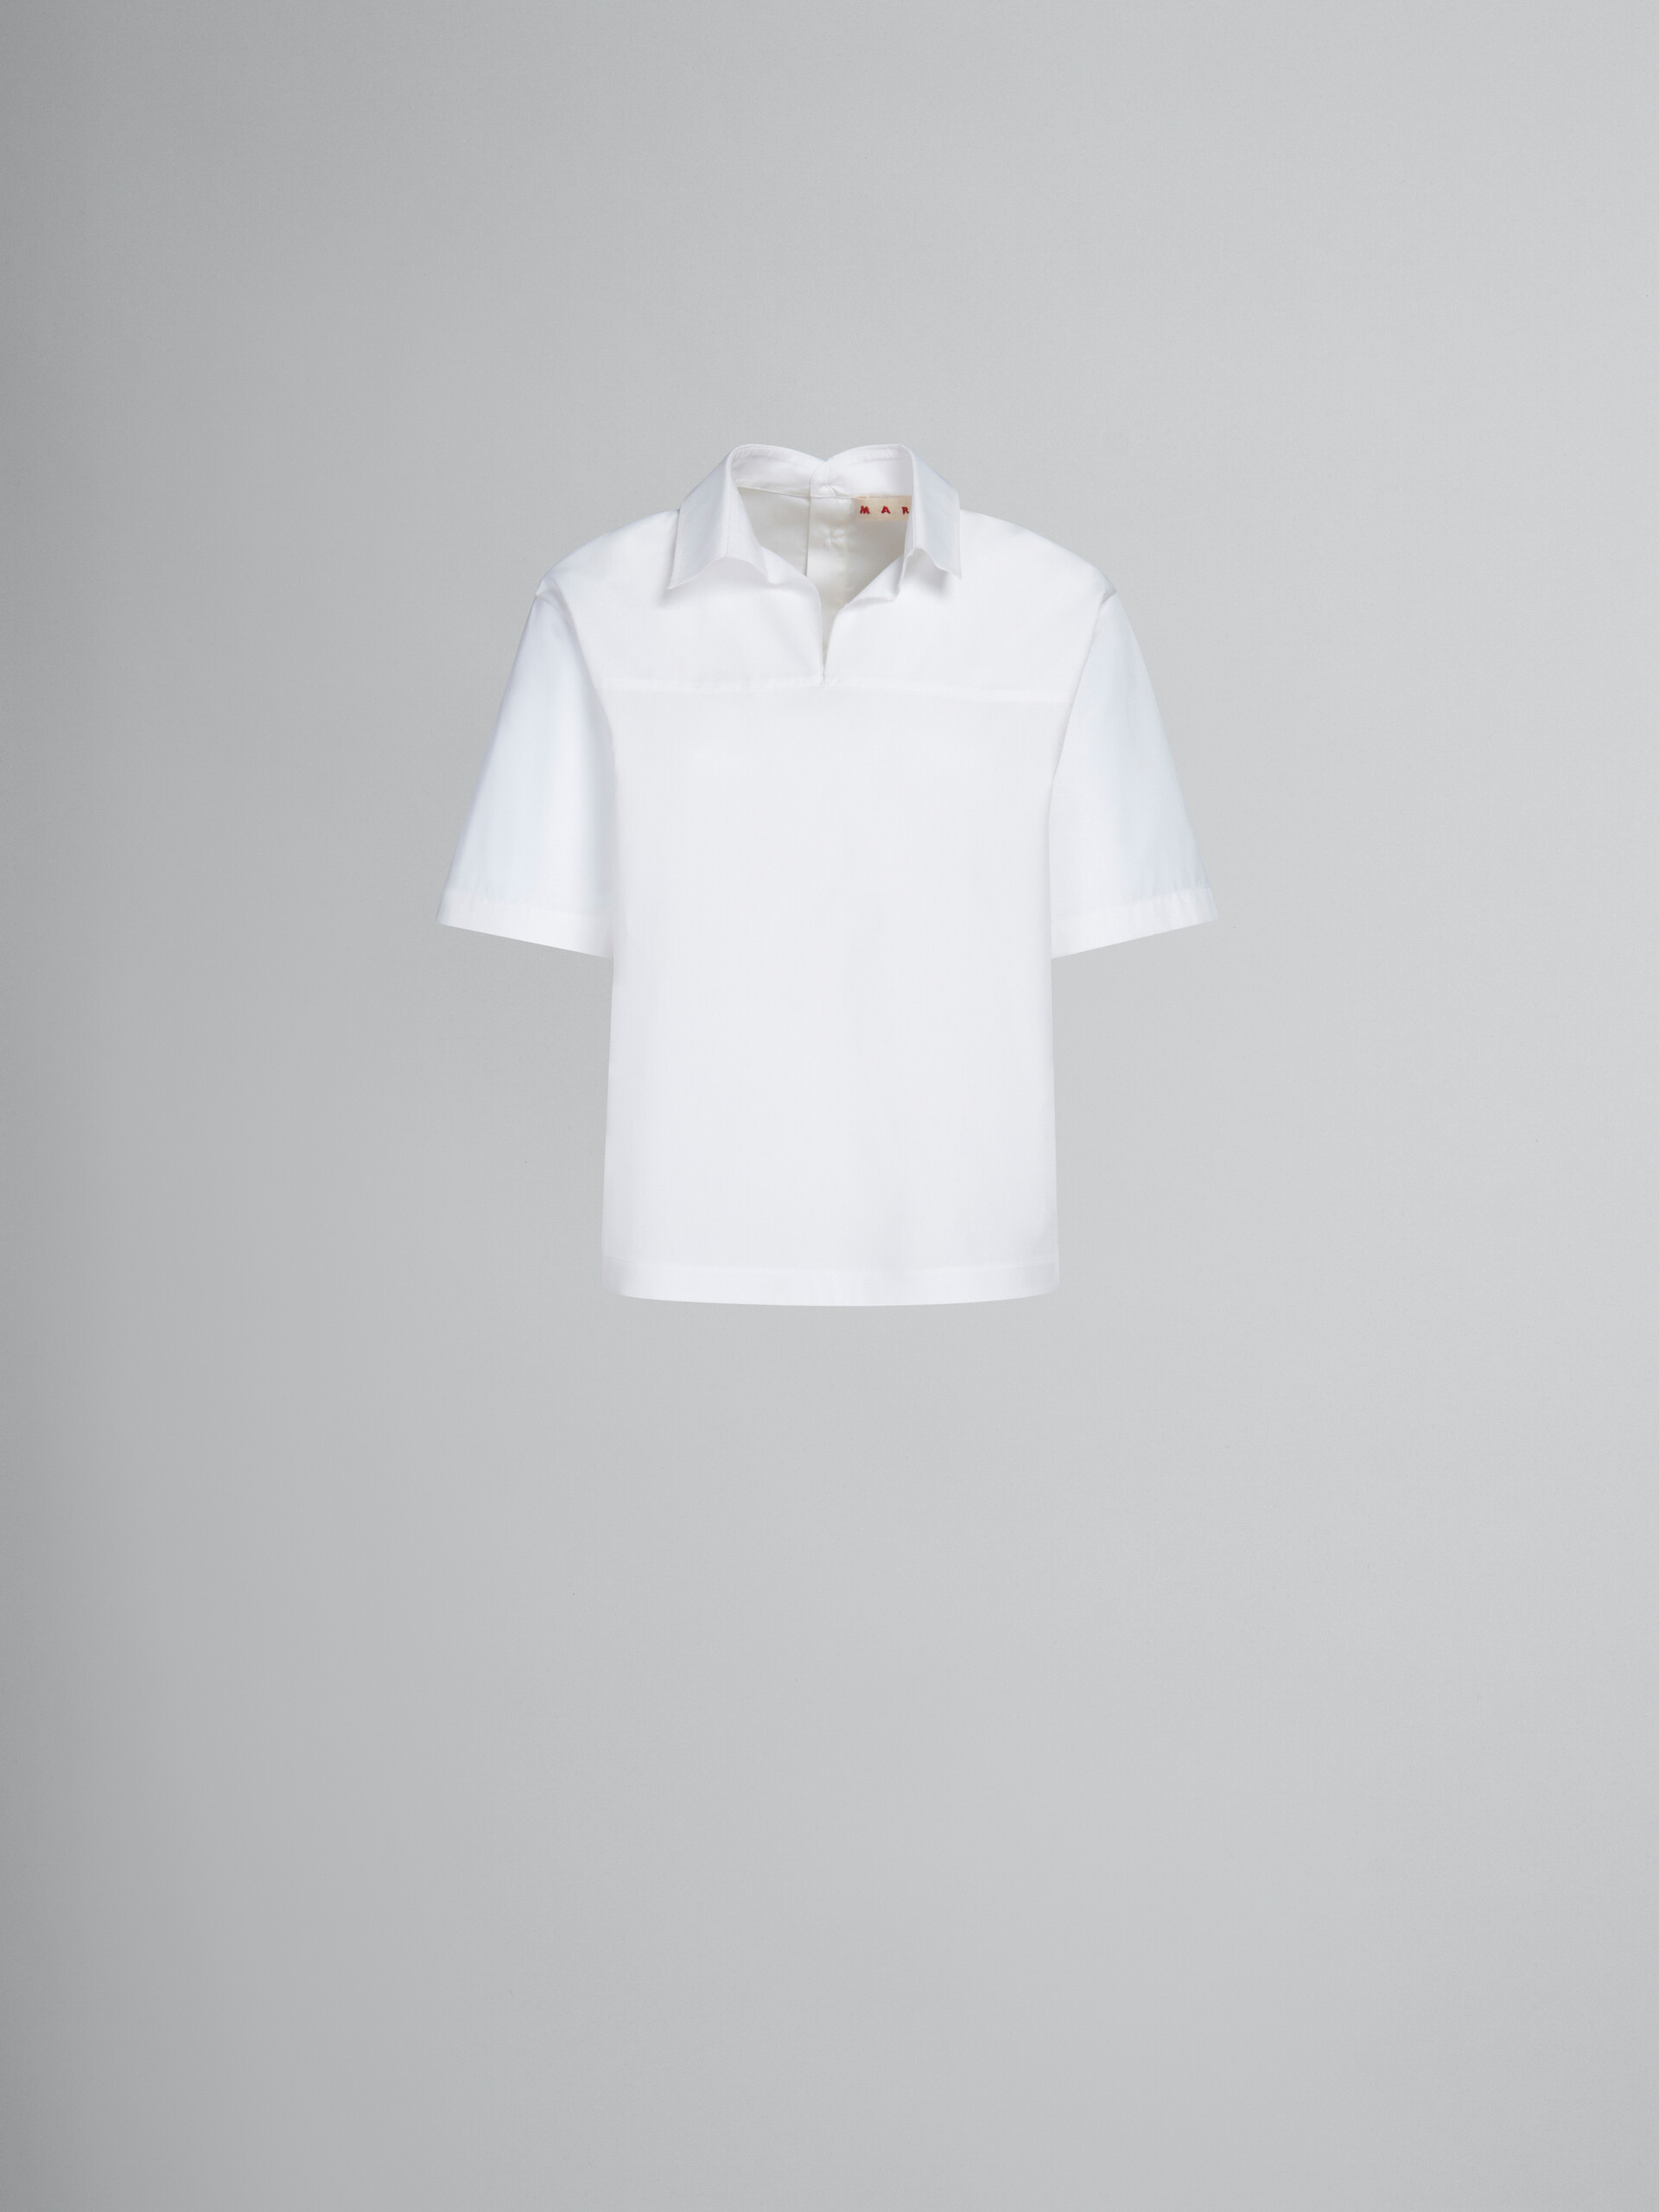 Blouse en popeline biologique blanche avec arrière polo - Chemises - Image 1